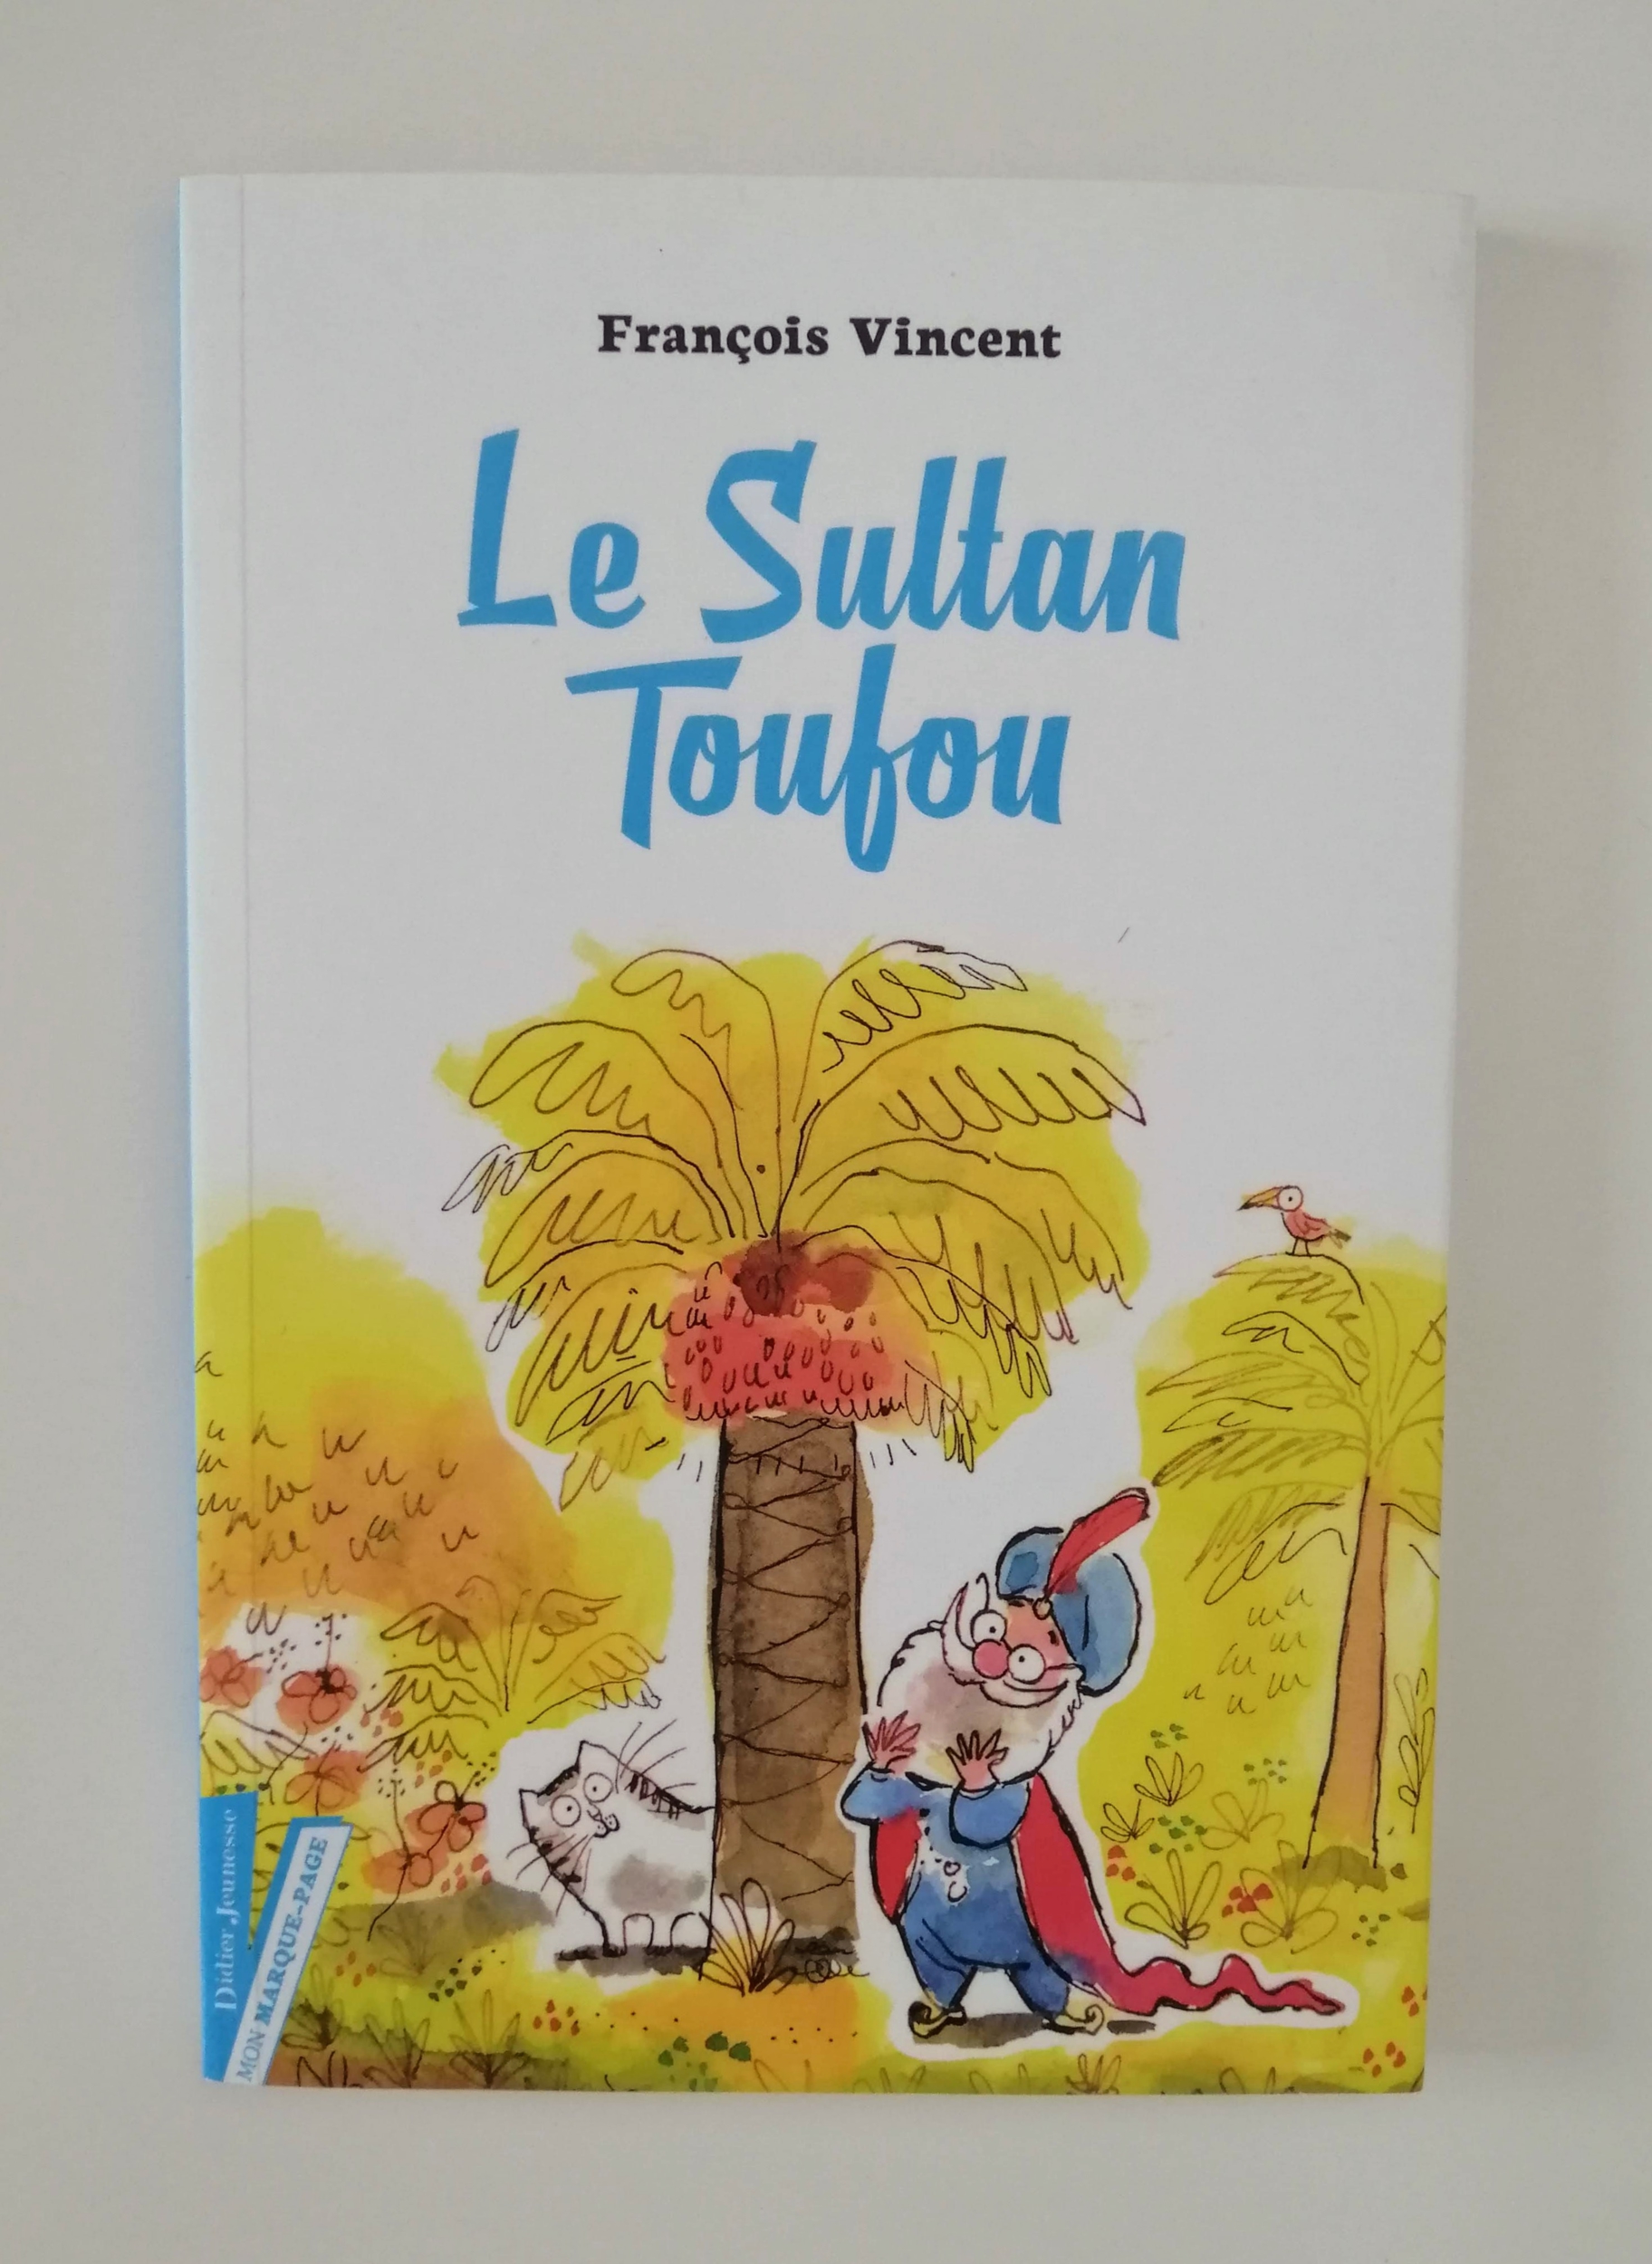 Le Sultan Toufou (François Vincent)